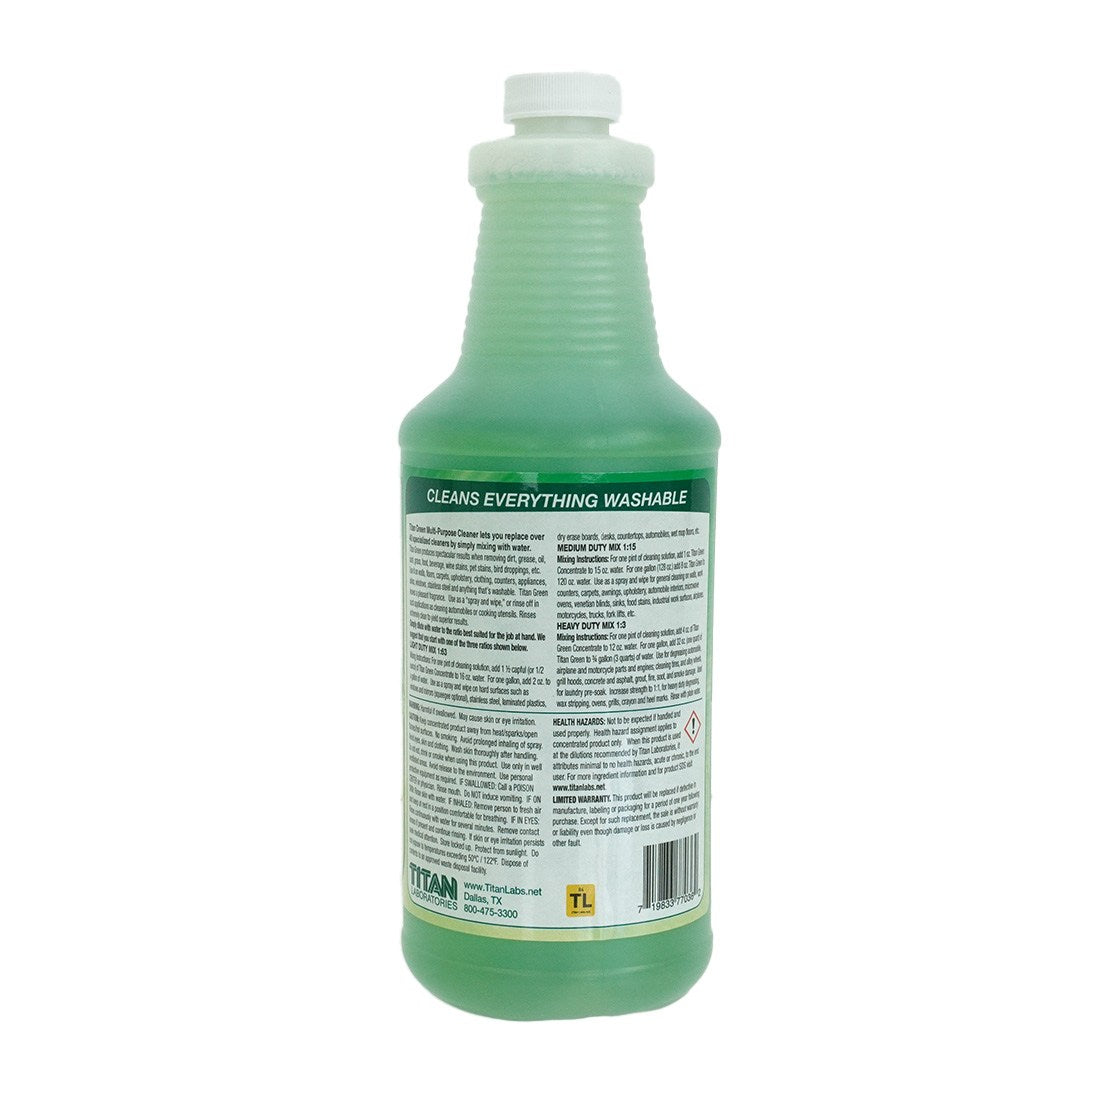 Res Care Liquid Resin Cleaner 1 qt. (case of 12)